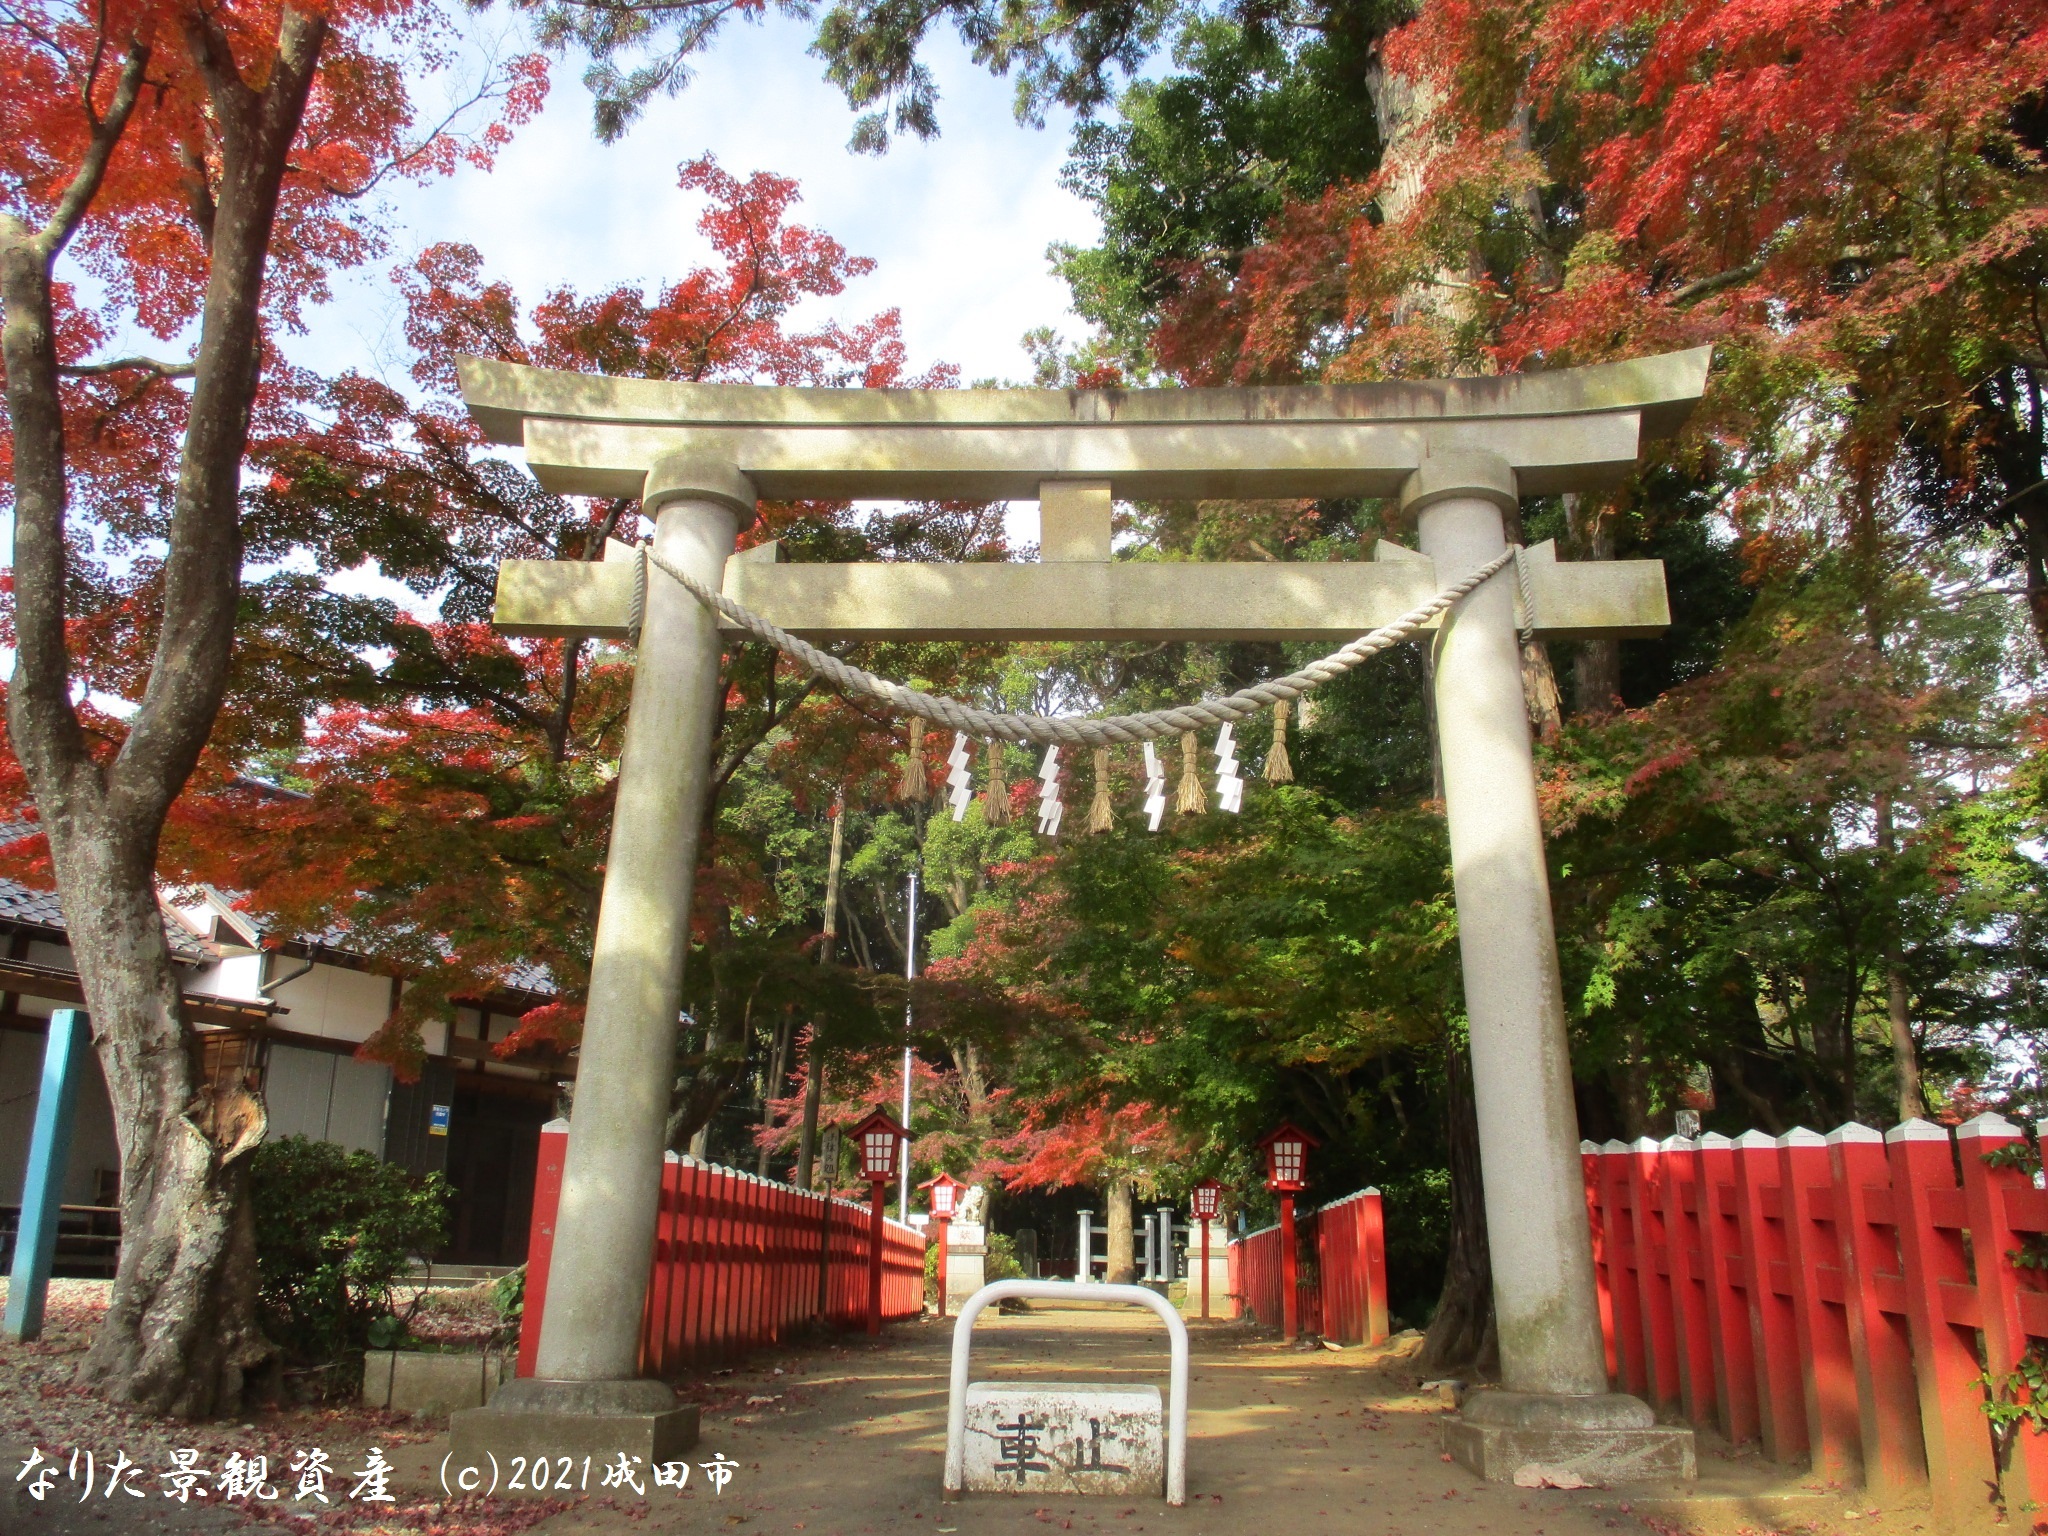 麻賀多神社（奥津宮）と紅葉の景観写真2